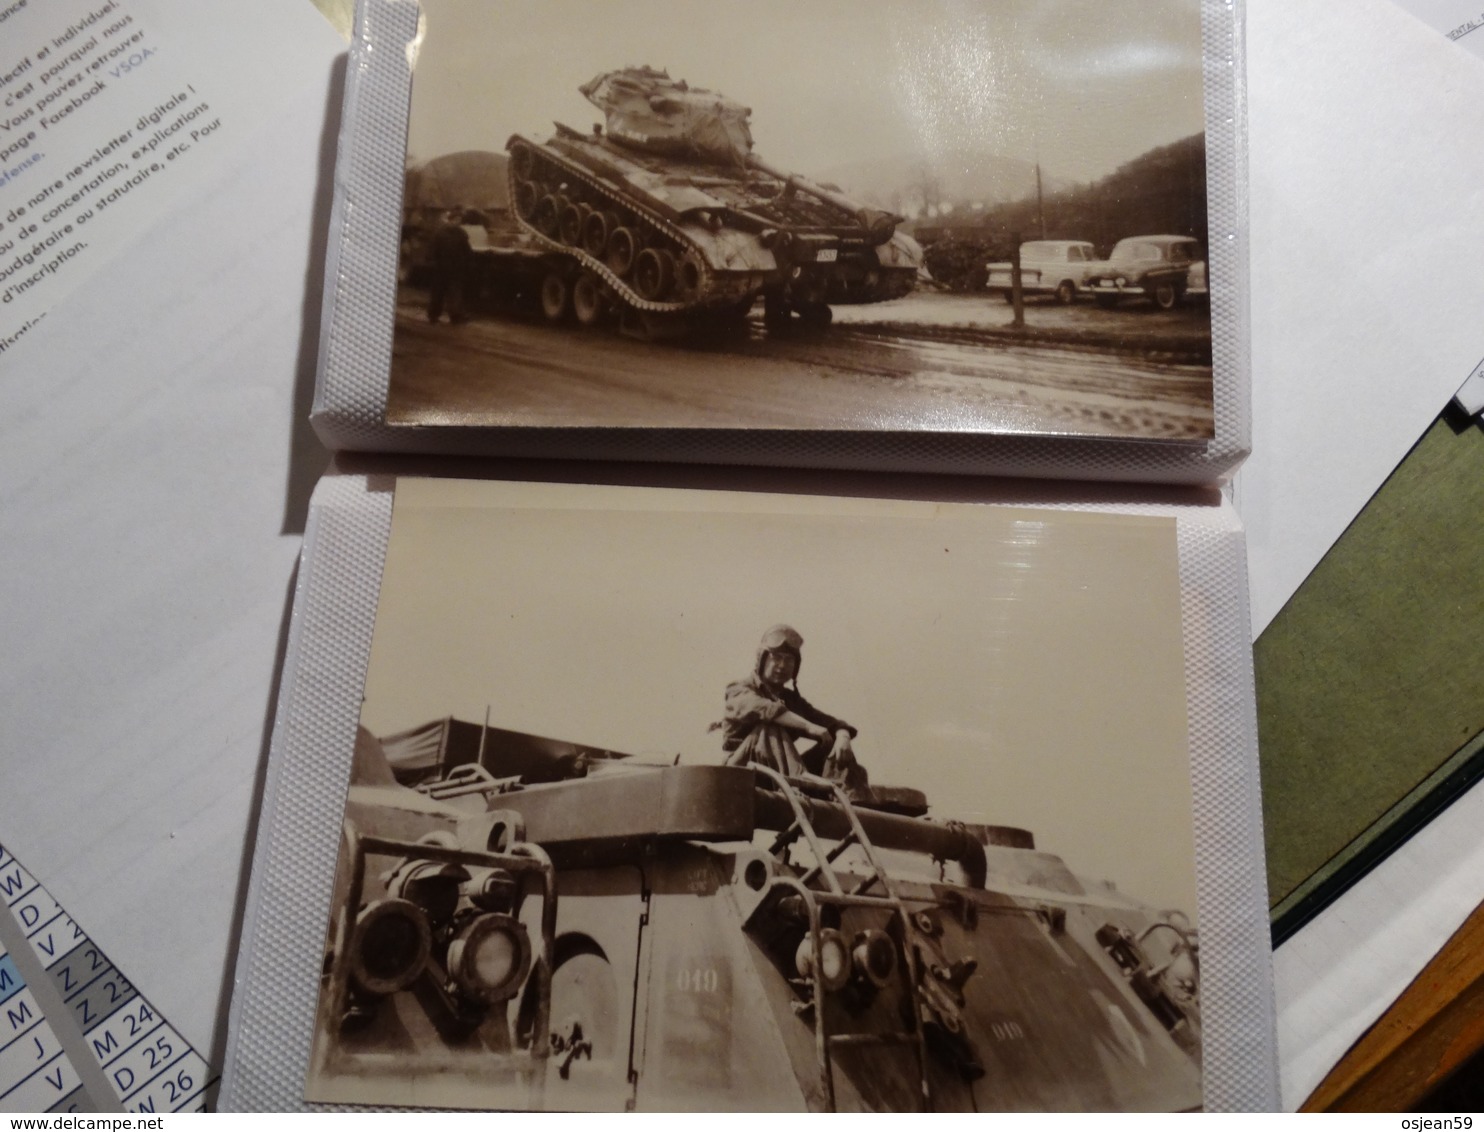 Petit album avec photos militaires (chars,jeep,personnages,...) année 1950-1960.